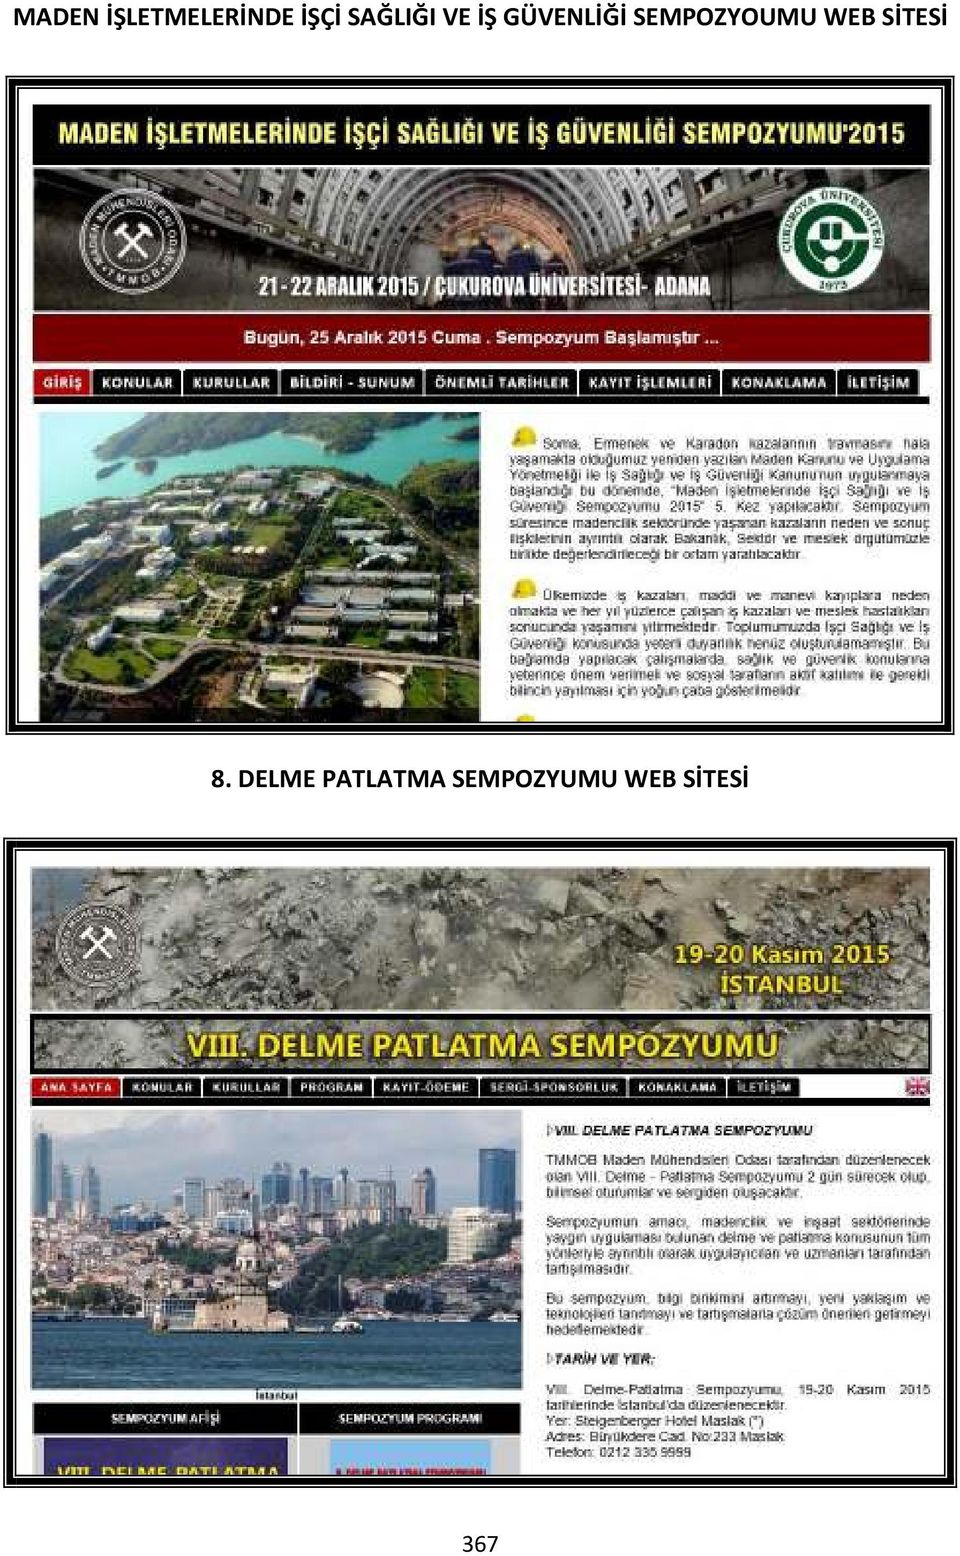 SEMPOZYOUMU WEB SİTESİ 8.